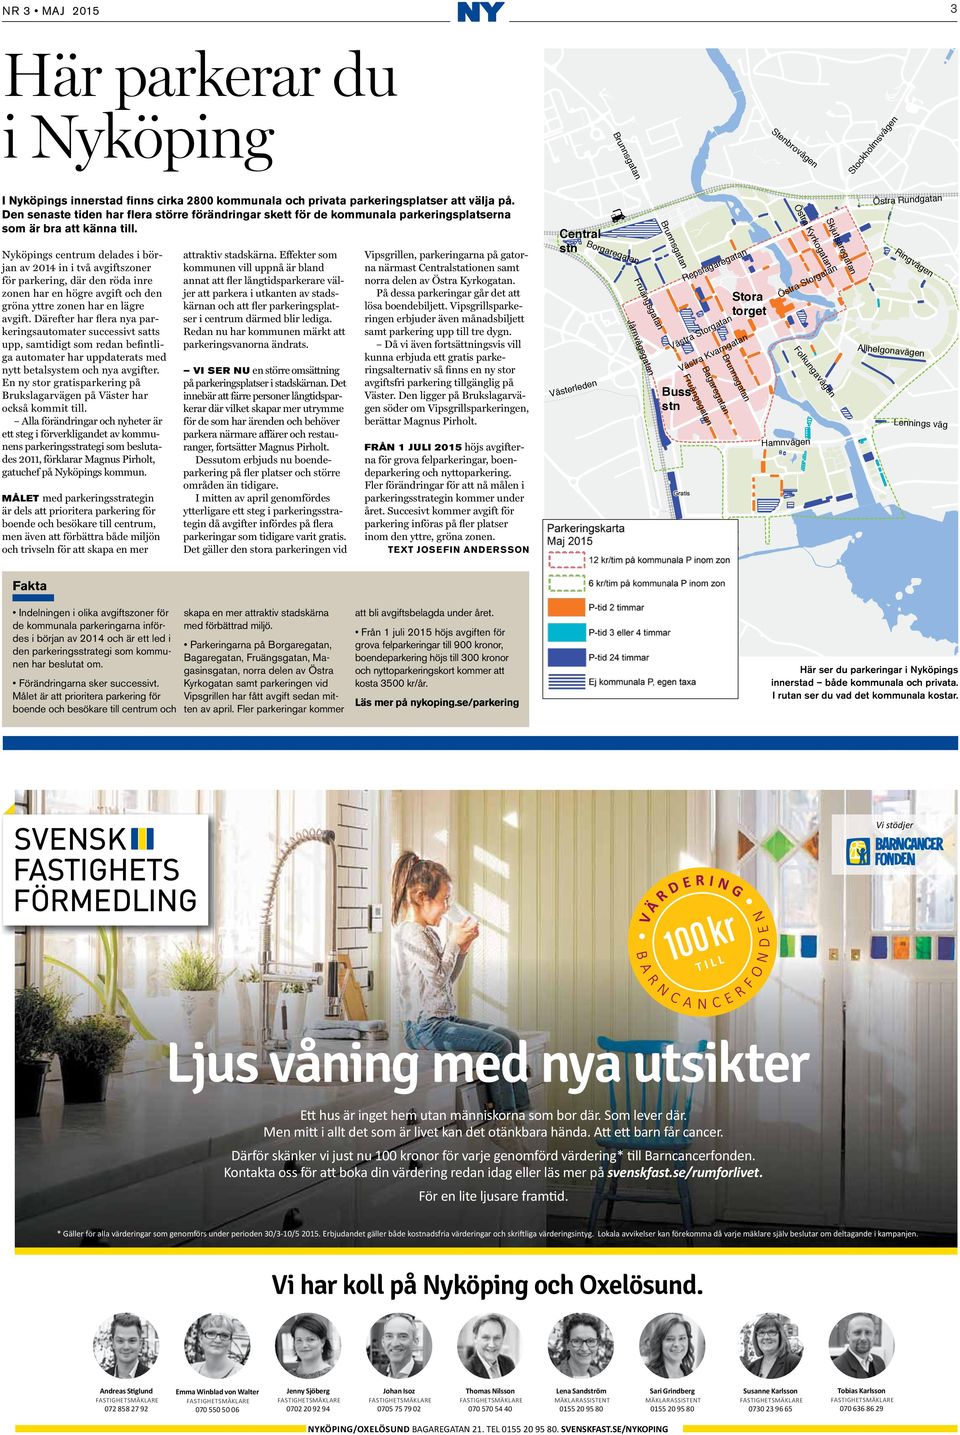 Nyköpings centrum delades i början av 2014 in i två avgiftszoner för parkering, där den röda inre zonen har en högre avgift och den gröna yttre zonen har en lägre avgift.